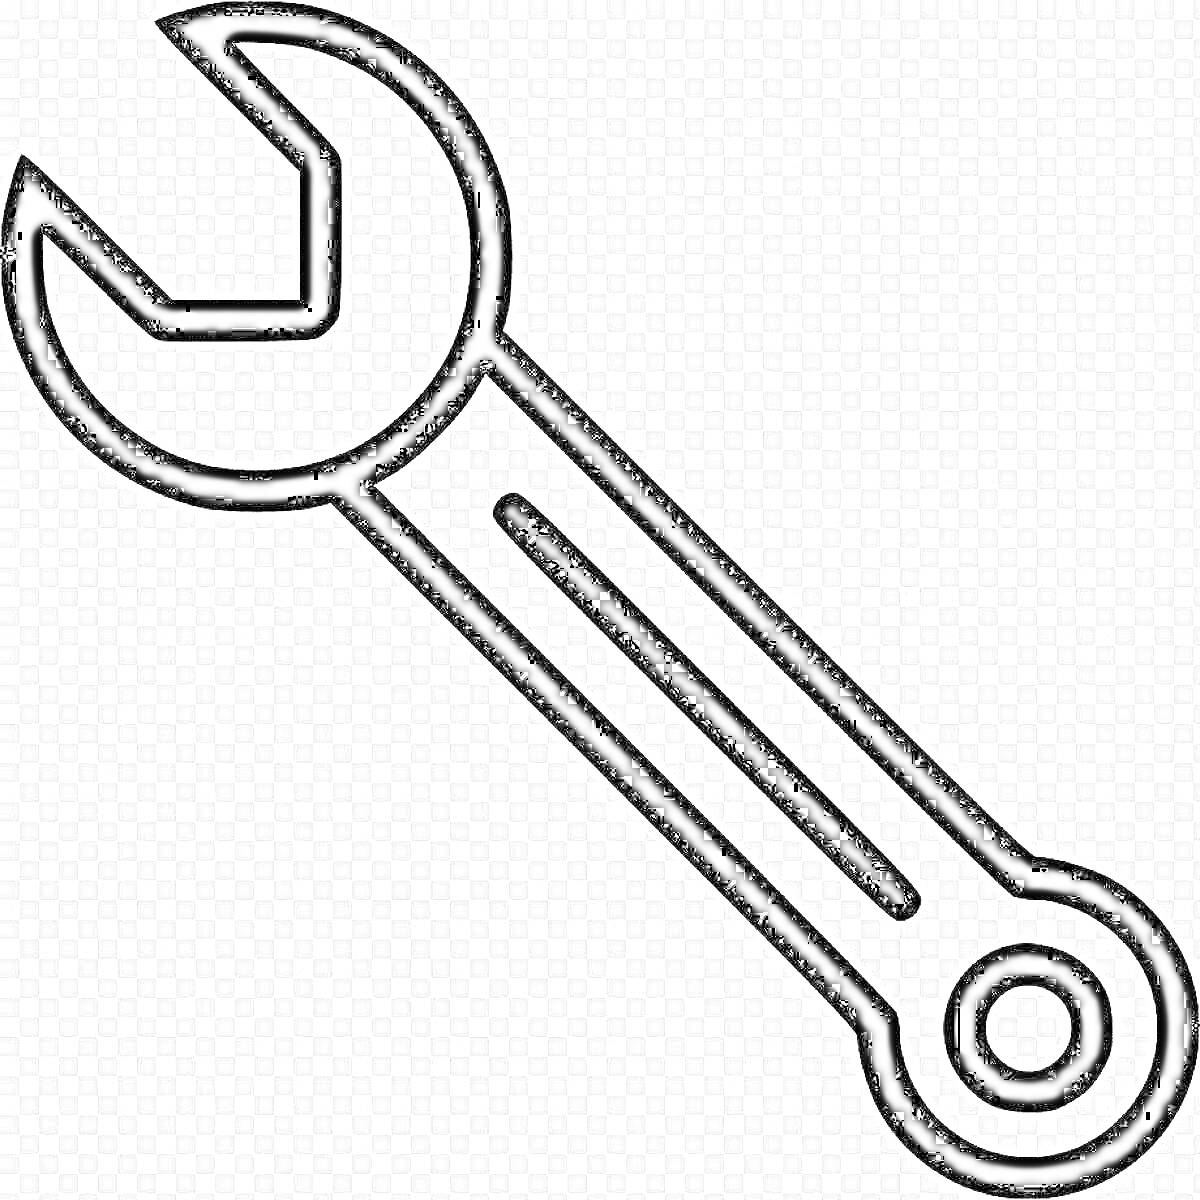 Раскраска Гаечный ключ с открытым зевом и отверстием на конце рукоятки